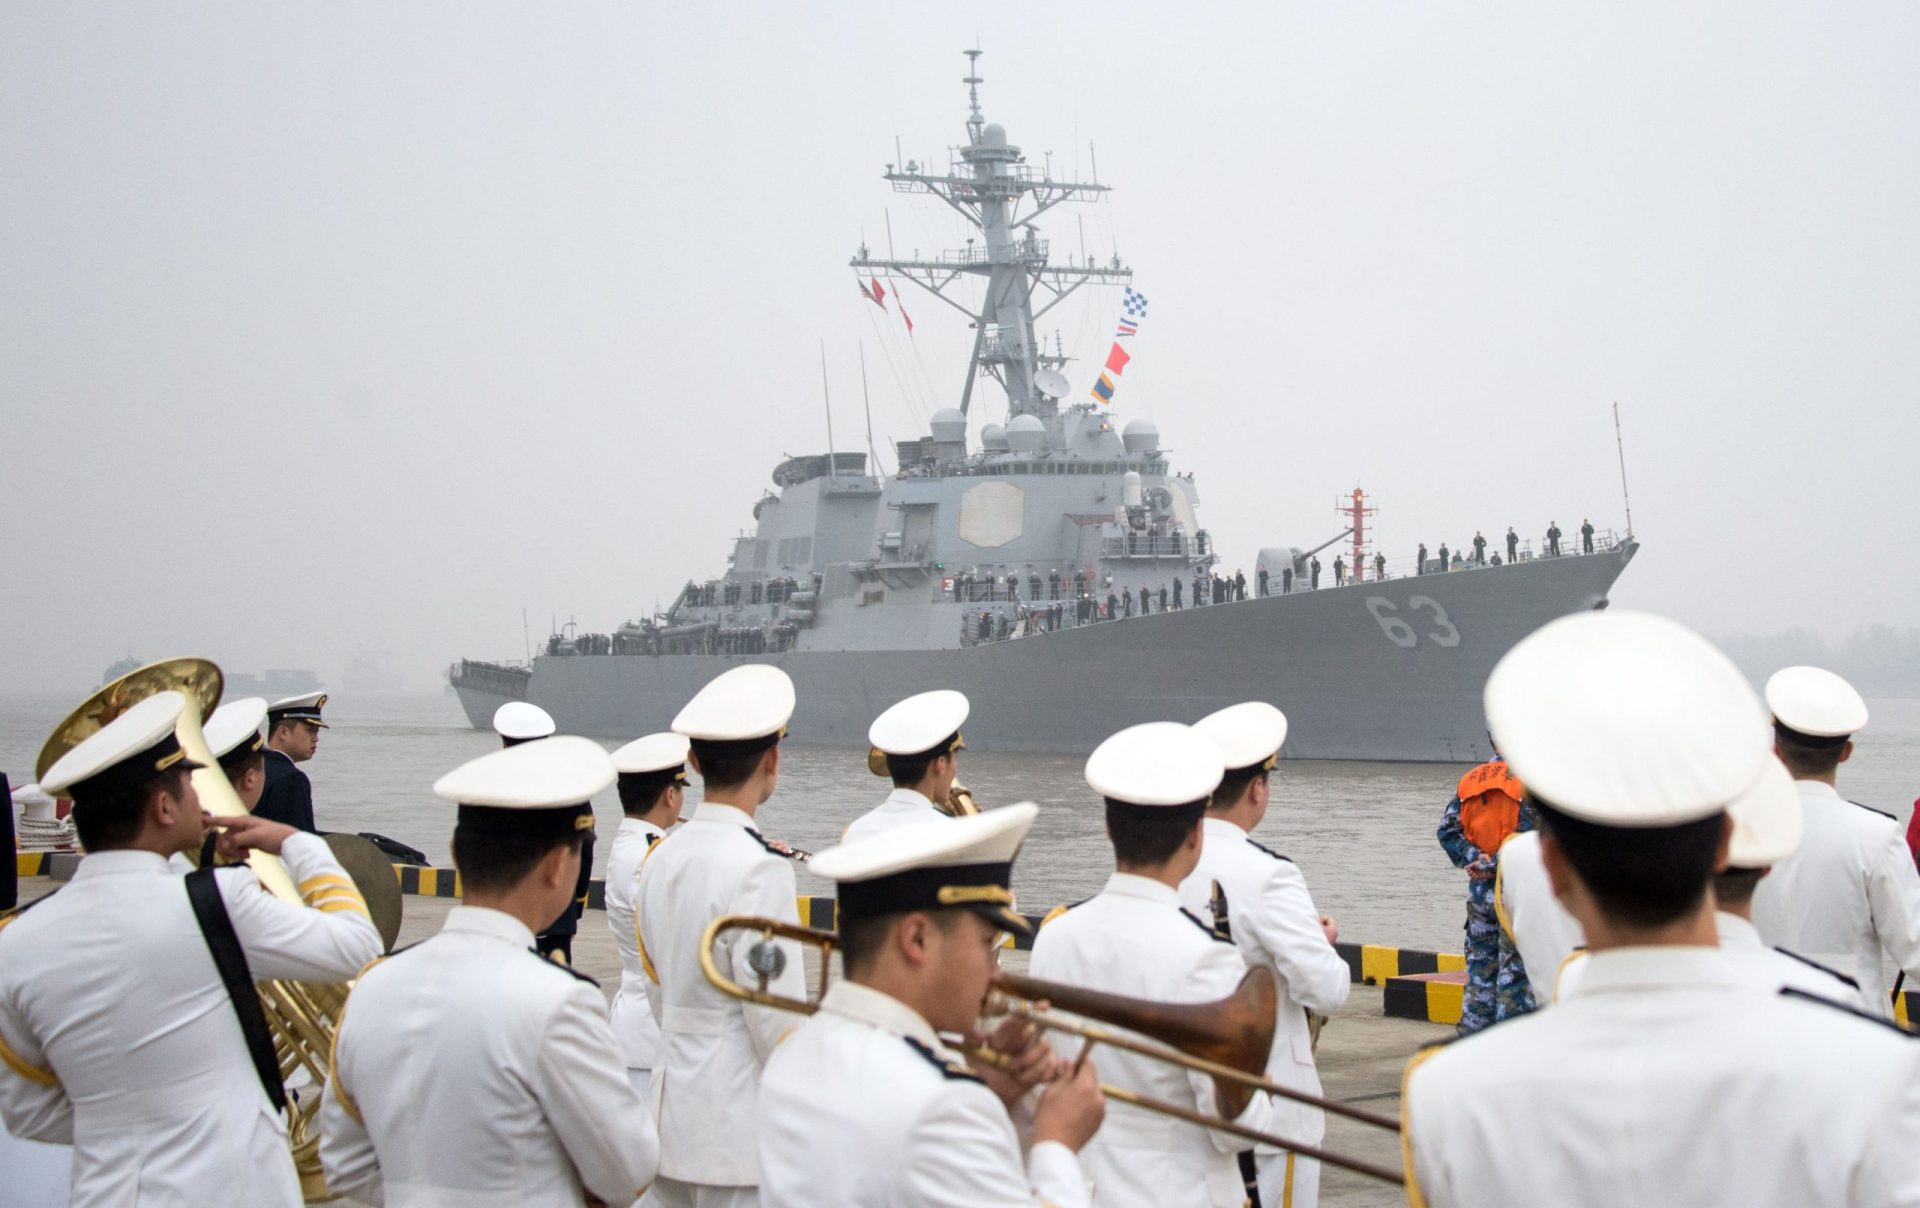 Diplomacia. EUA azedam o elo chinês com sanções, armas e um navio de guerra